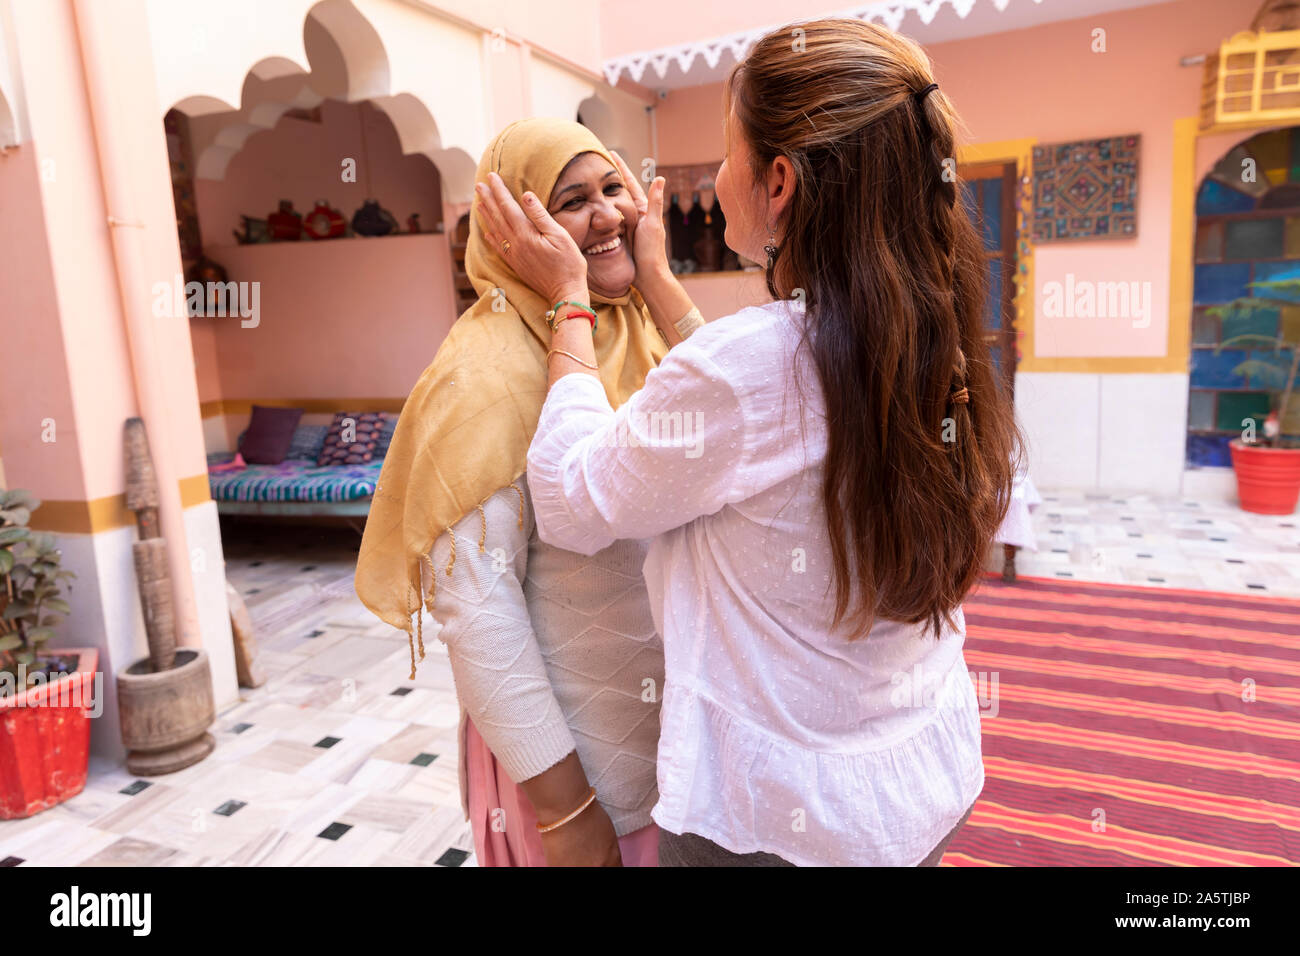 Una mujer occidental tazas sus manos alrededor de una mujer india de cara sonriente. Foto de stock